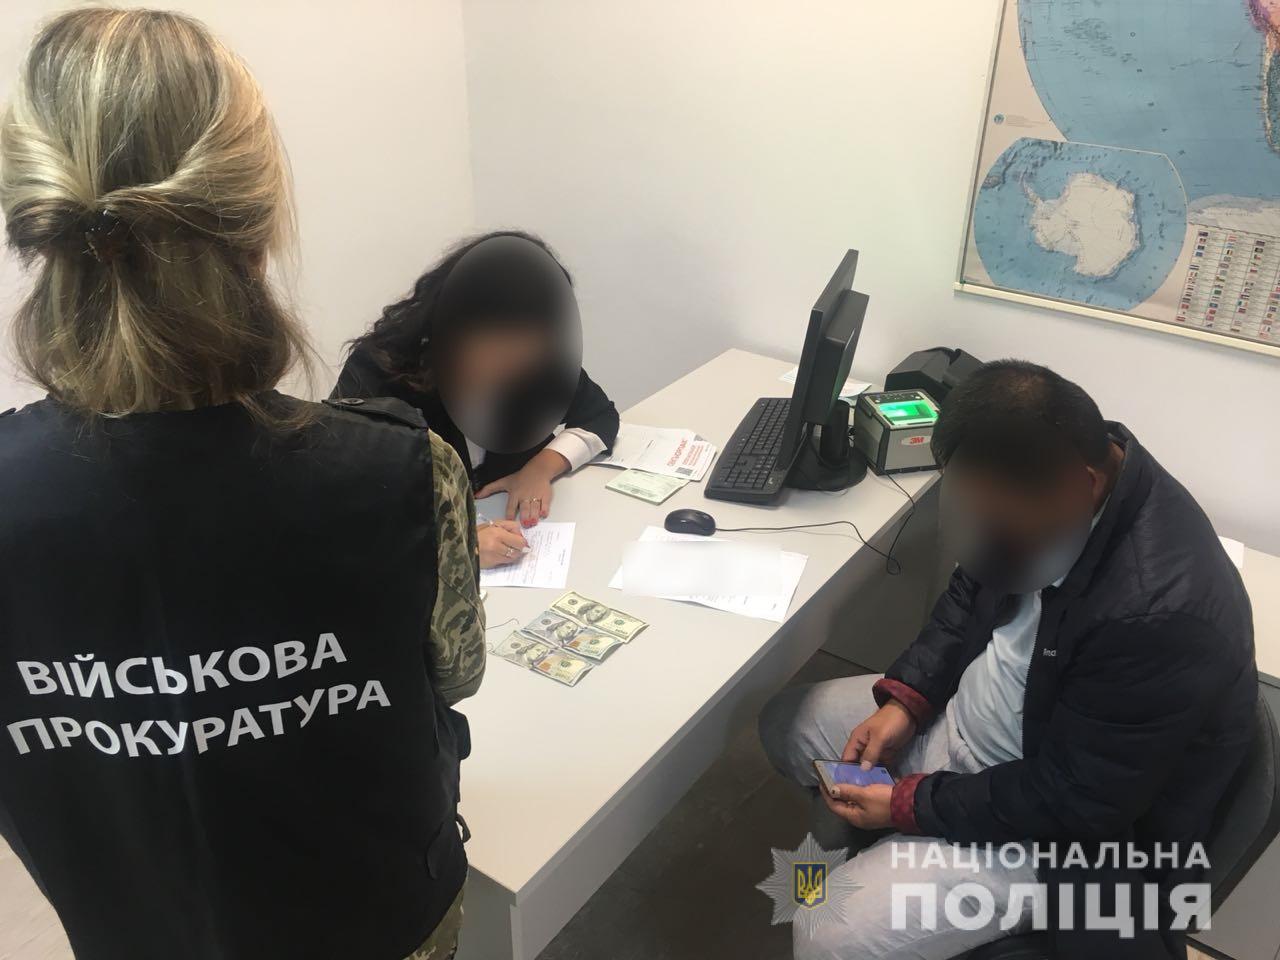 Через аэропорт “Борисполь” узбек пытался попасть в Украину за взятку в 500 долларов